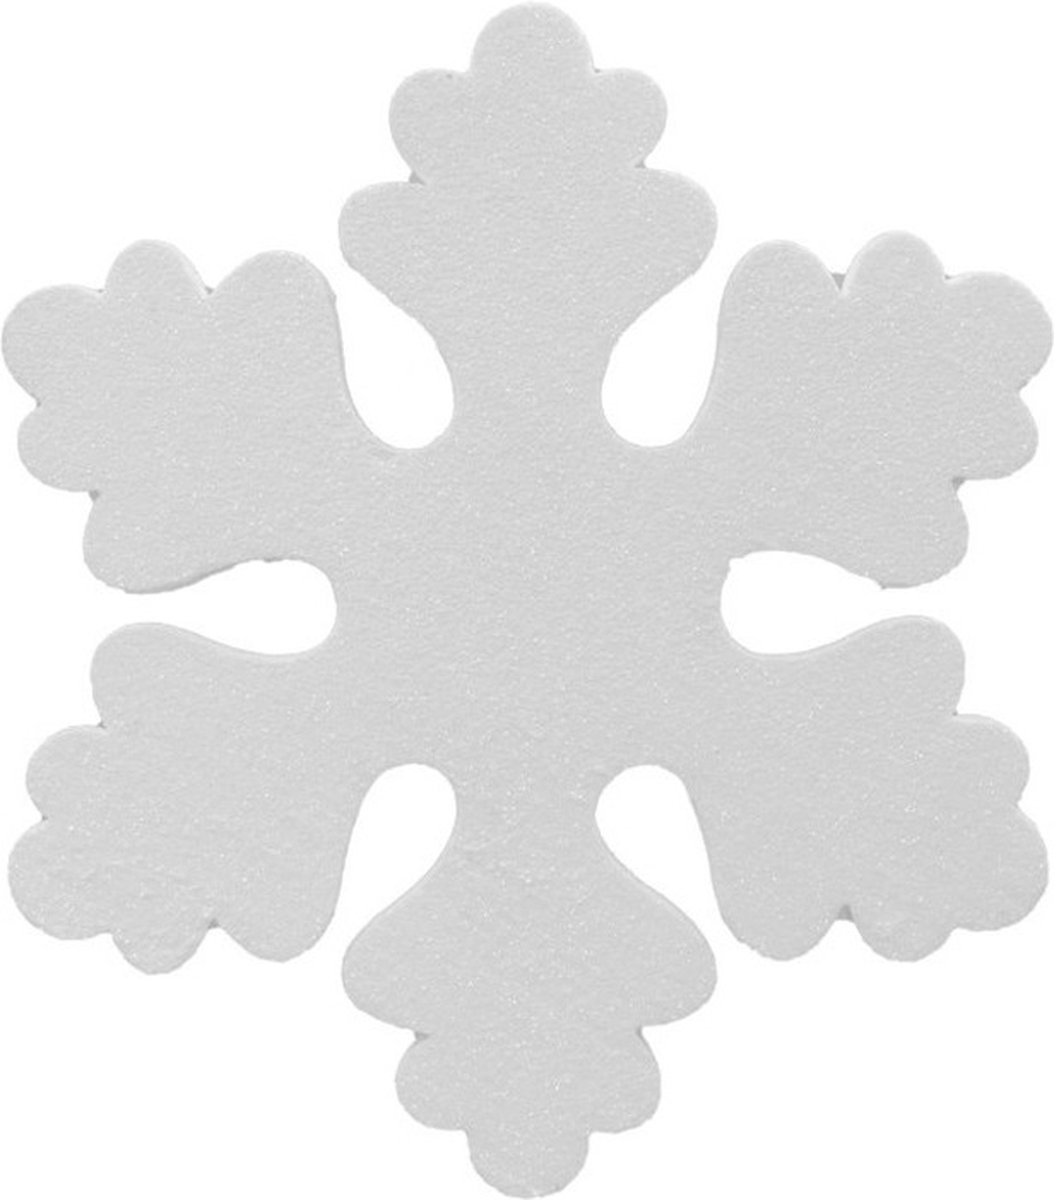 4x Witte decoratie sneeuwvlokken van foam 25 cm - Kerstversiering/kerstdecoratie sneeuwvlokken